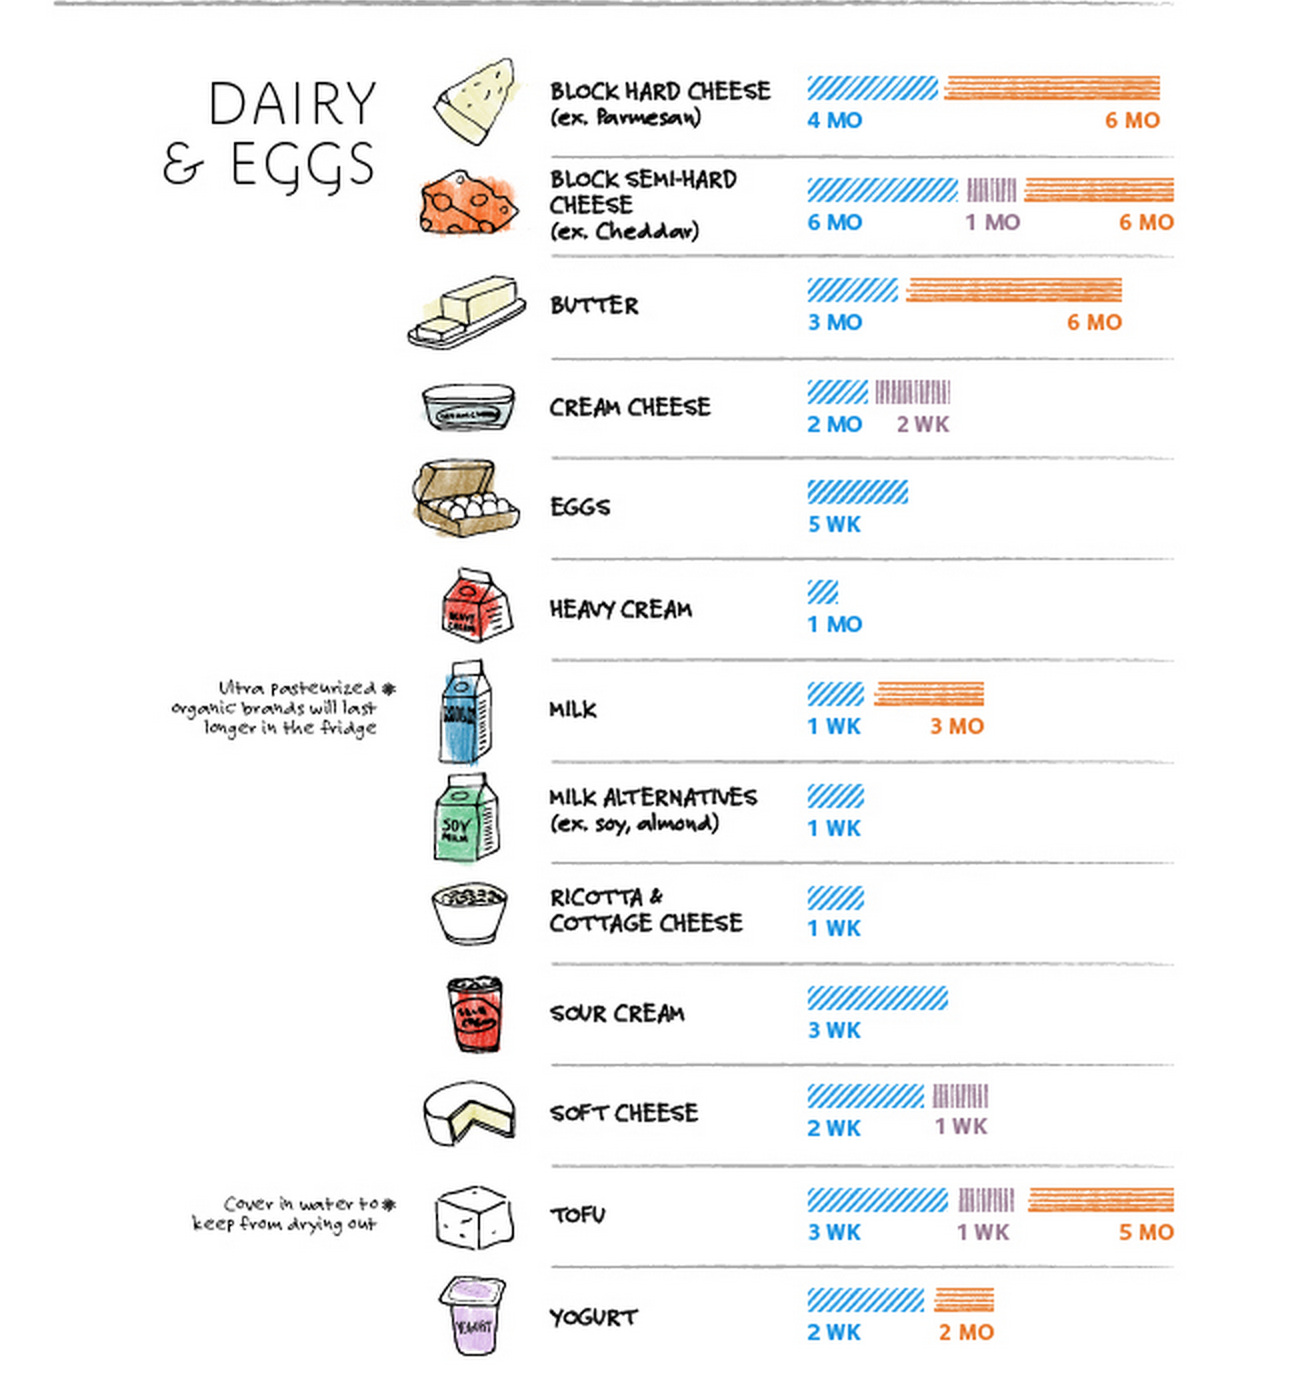 Food Storage Chart